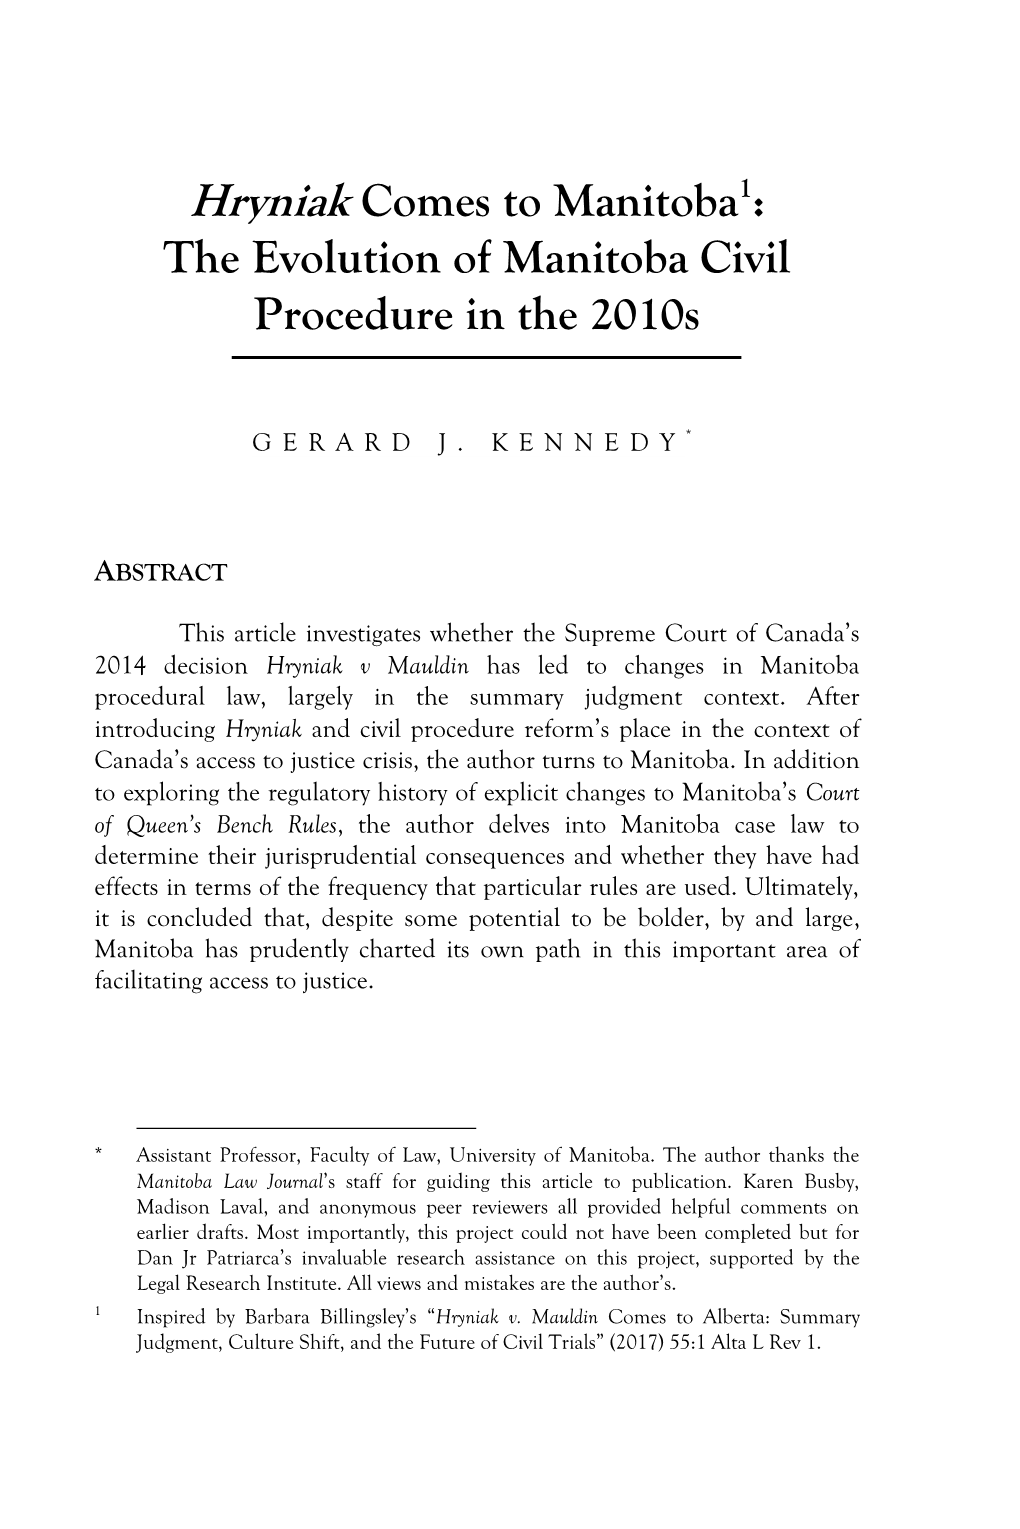 Hryniak Comes to Manitoba1: the Evolution of Manitoba Civil Procedure in the 2010S